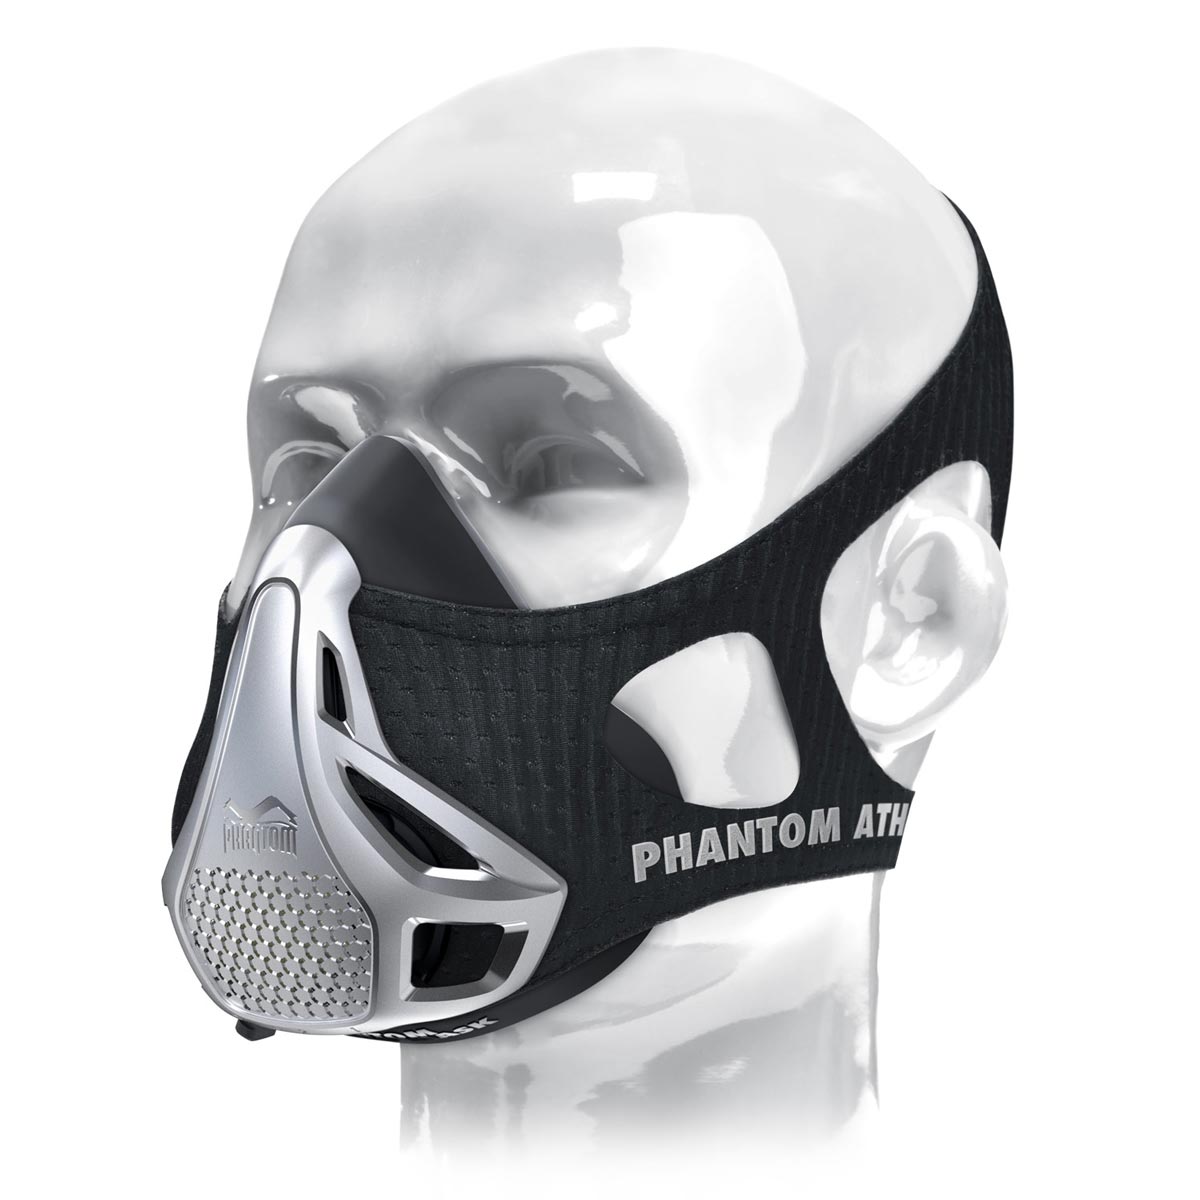 The original Phantom training mask - endurance for your sport